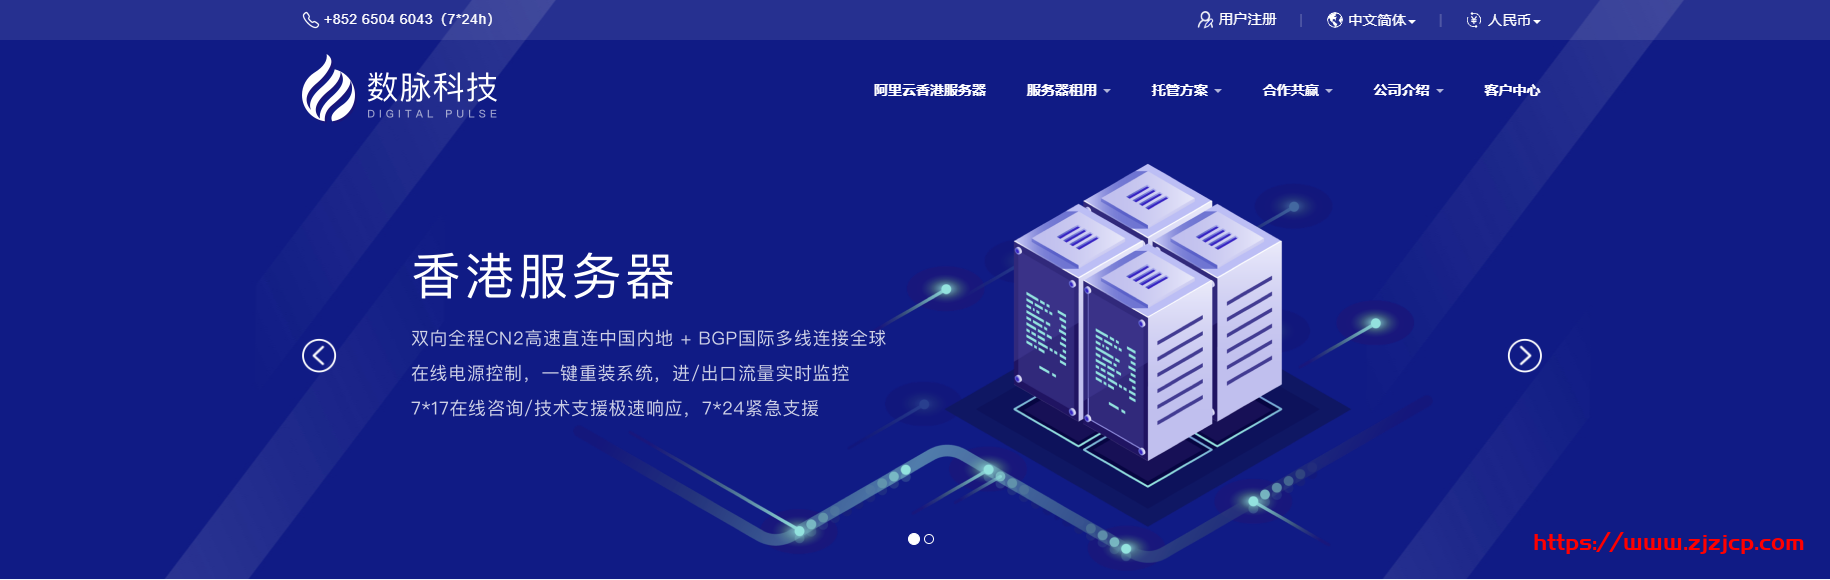 数脉科技 shuhost：香港服务器 8 折优惠，10M~30M 带宽，e3 系列低至 432 元/月，自带 Windows+3IP